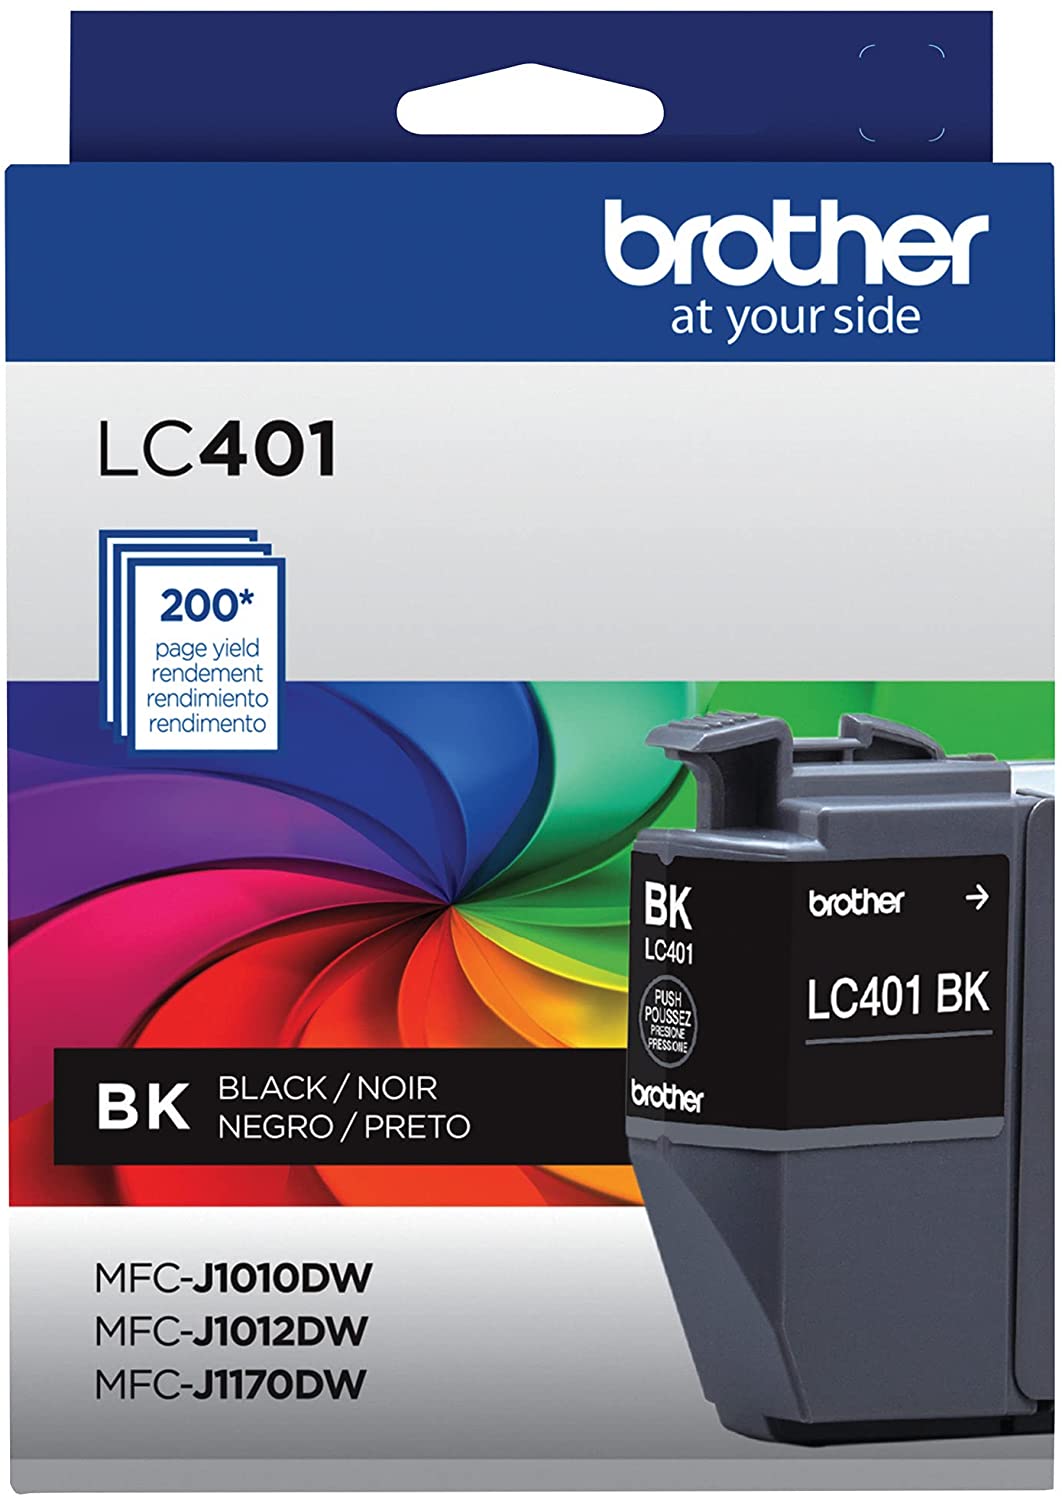 OEM Brother LC-401BK Black Ink Cartridges (200 page yeild)